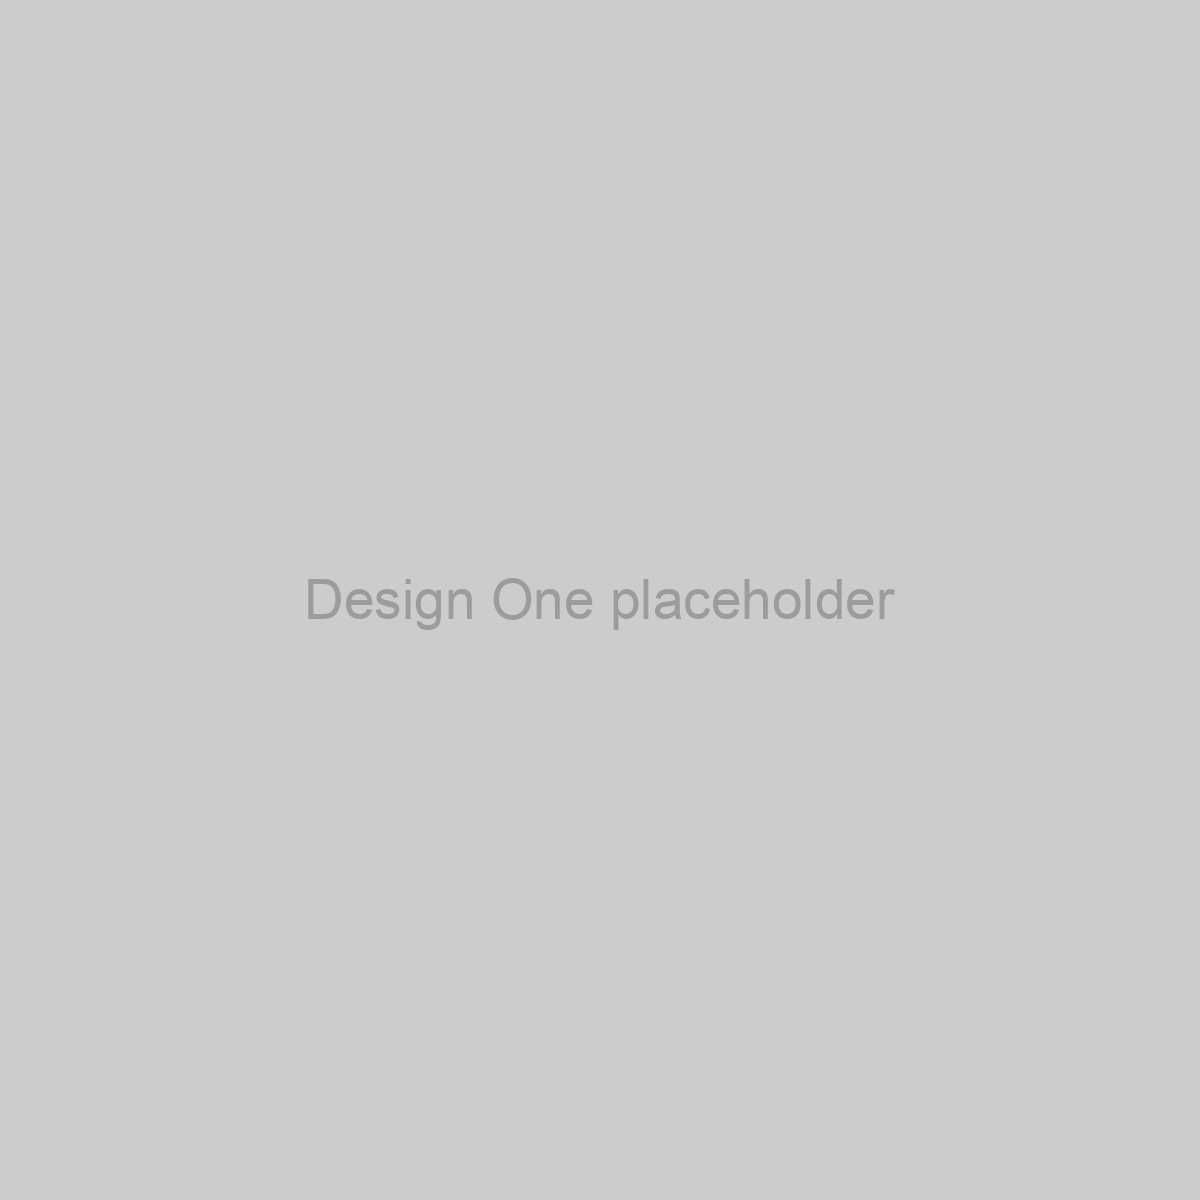 Design One Placeholder Image